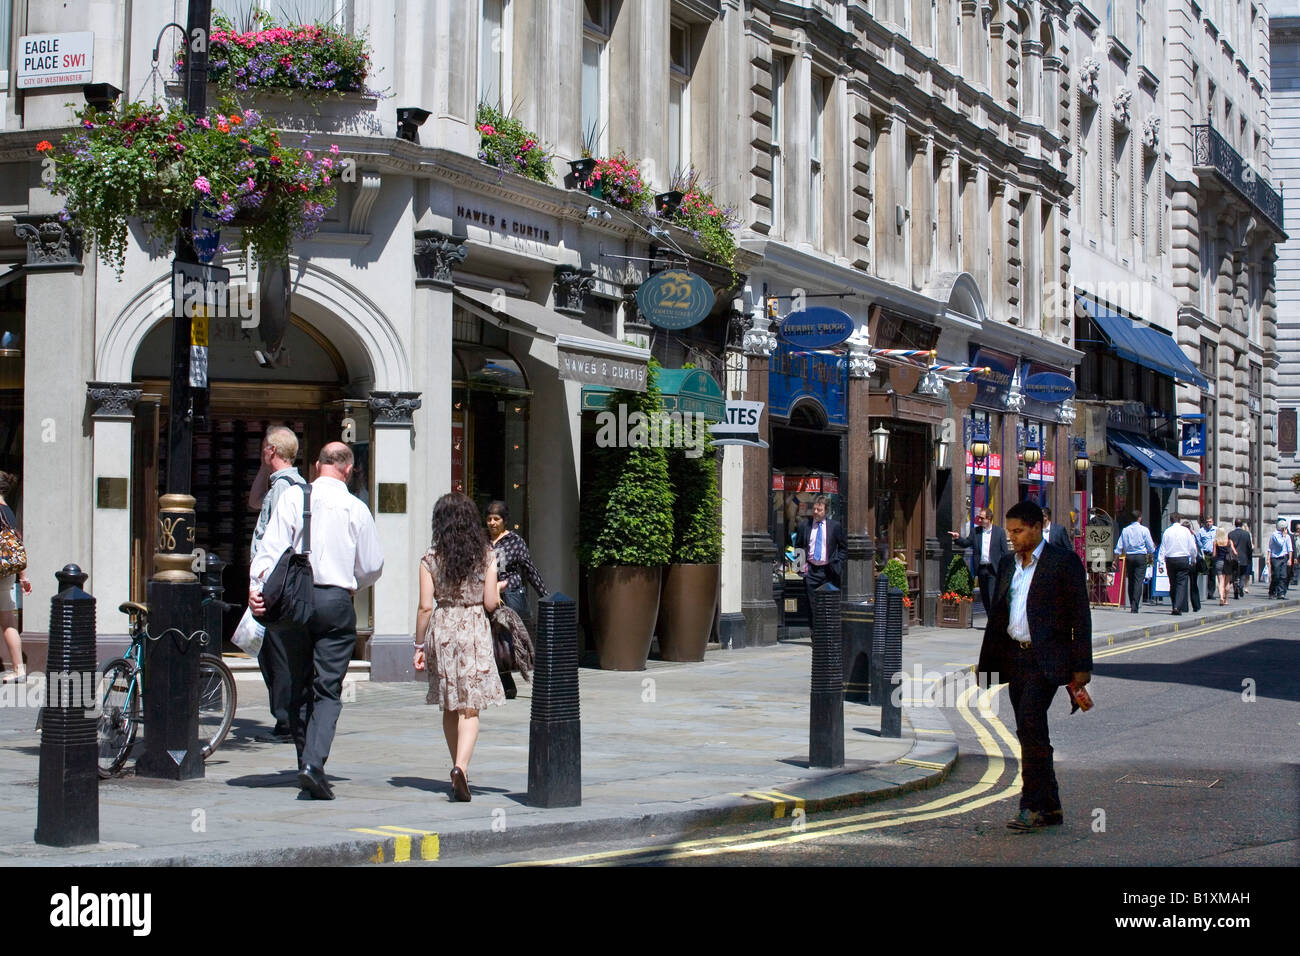 Jermyn Street in London Stock Photo